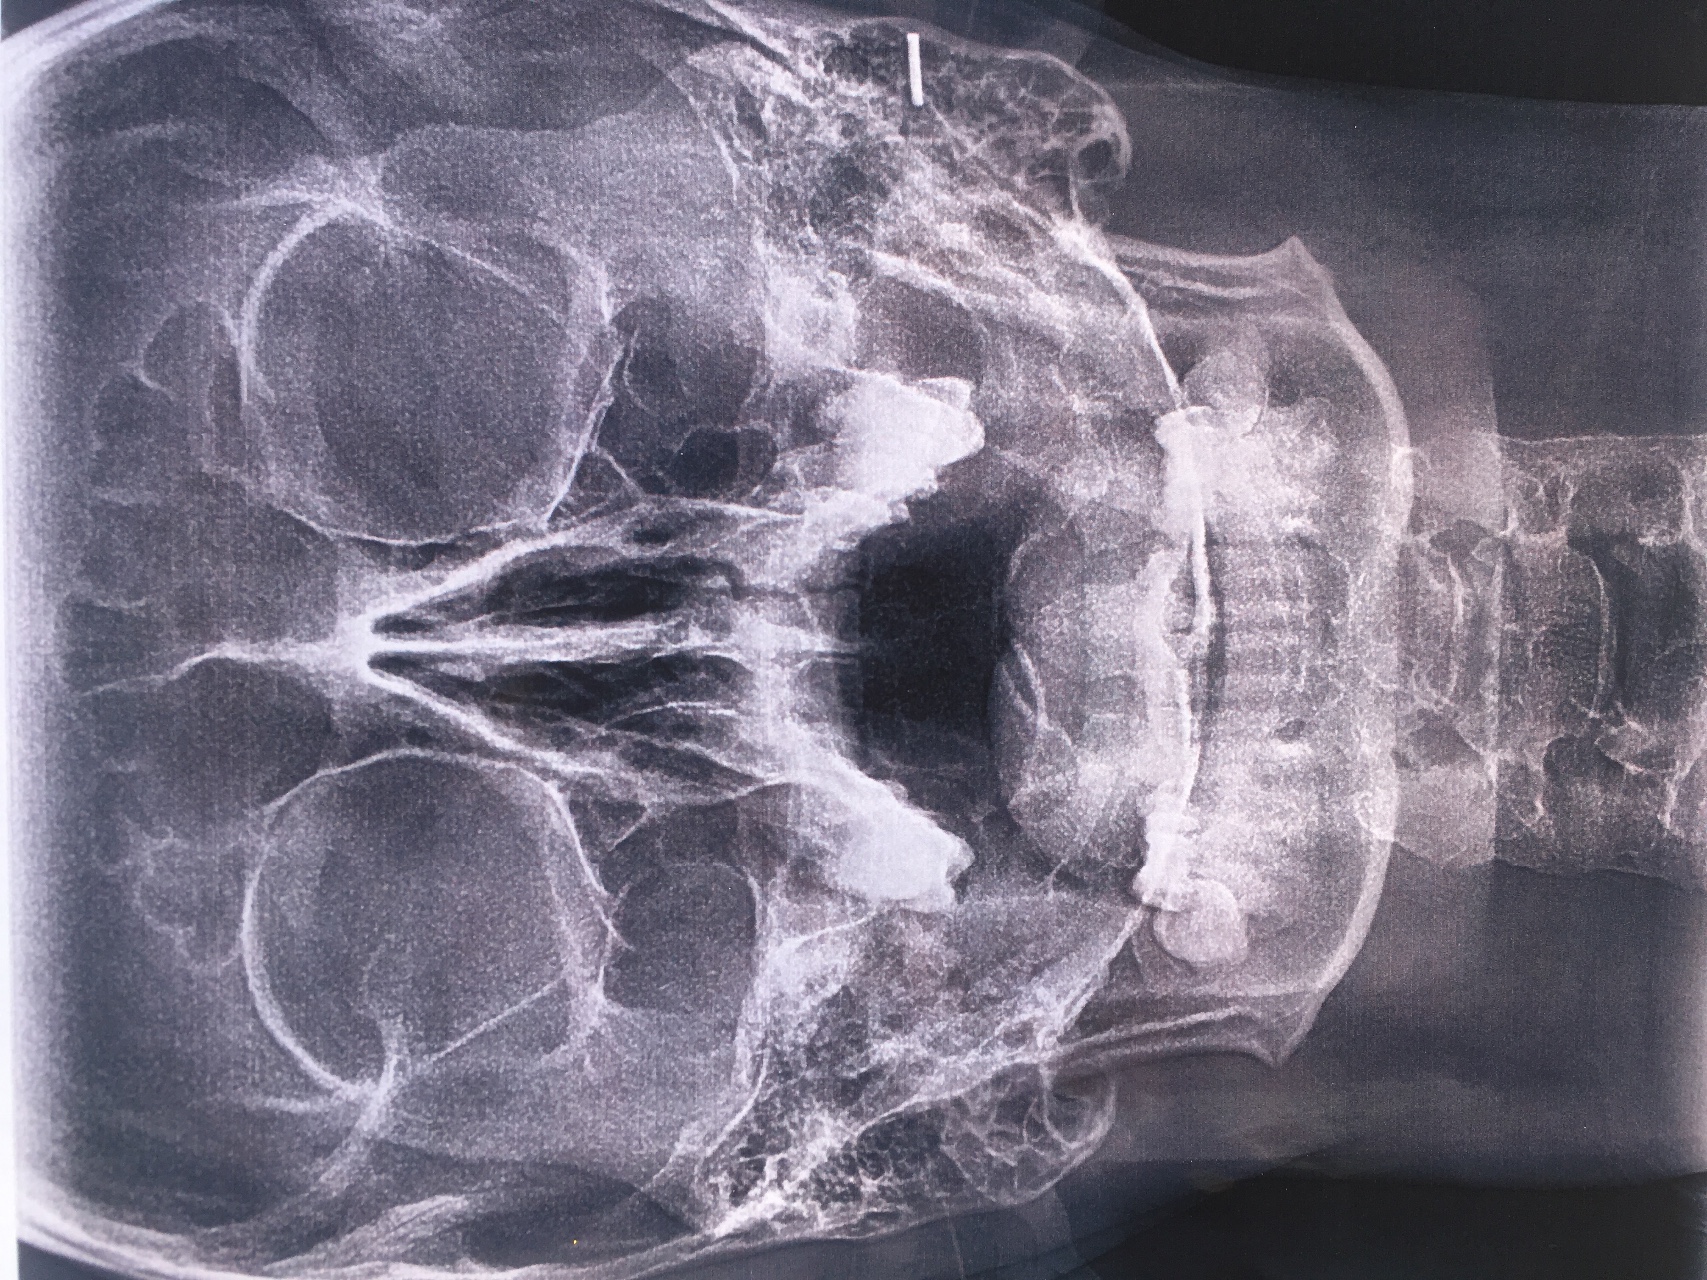 Рентген околоносовых пазух